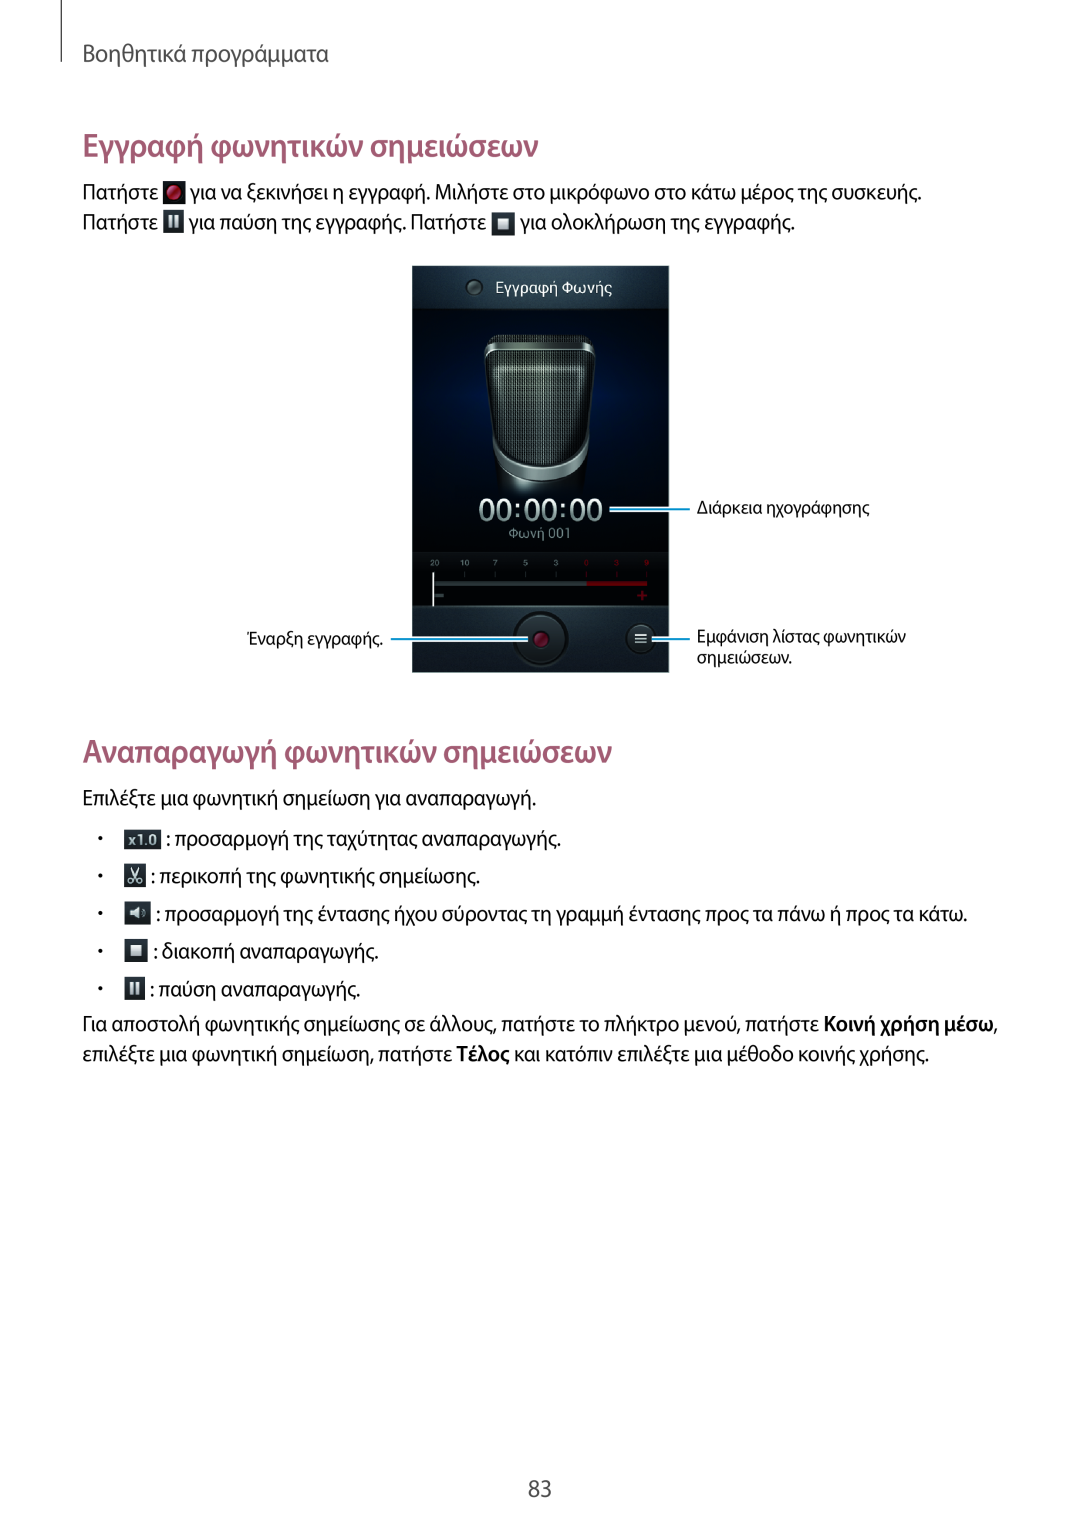 Samsung GT-S7710TAACYV manual Εγγραφή φωνητικών σημειώσεων, Αναπαραγωγή φωνητικών σημειώσεων, Βοηθητικά προγράμματα 